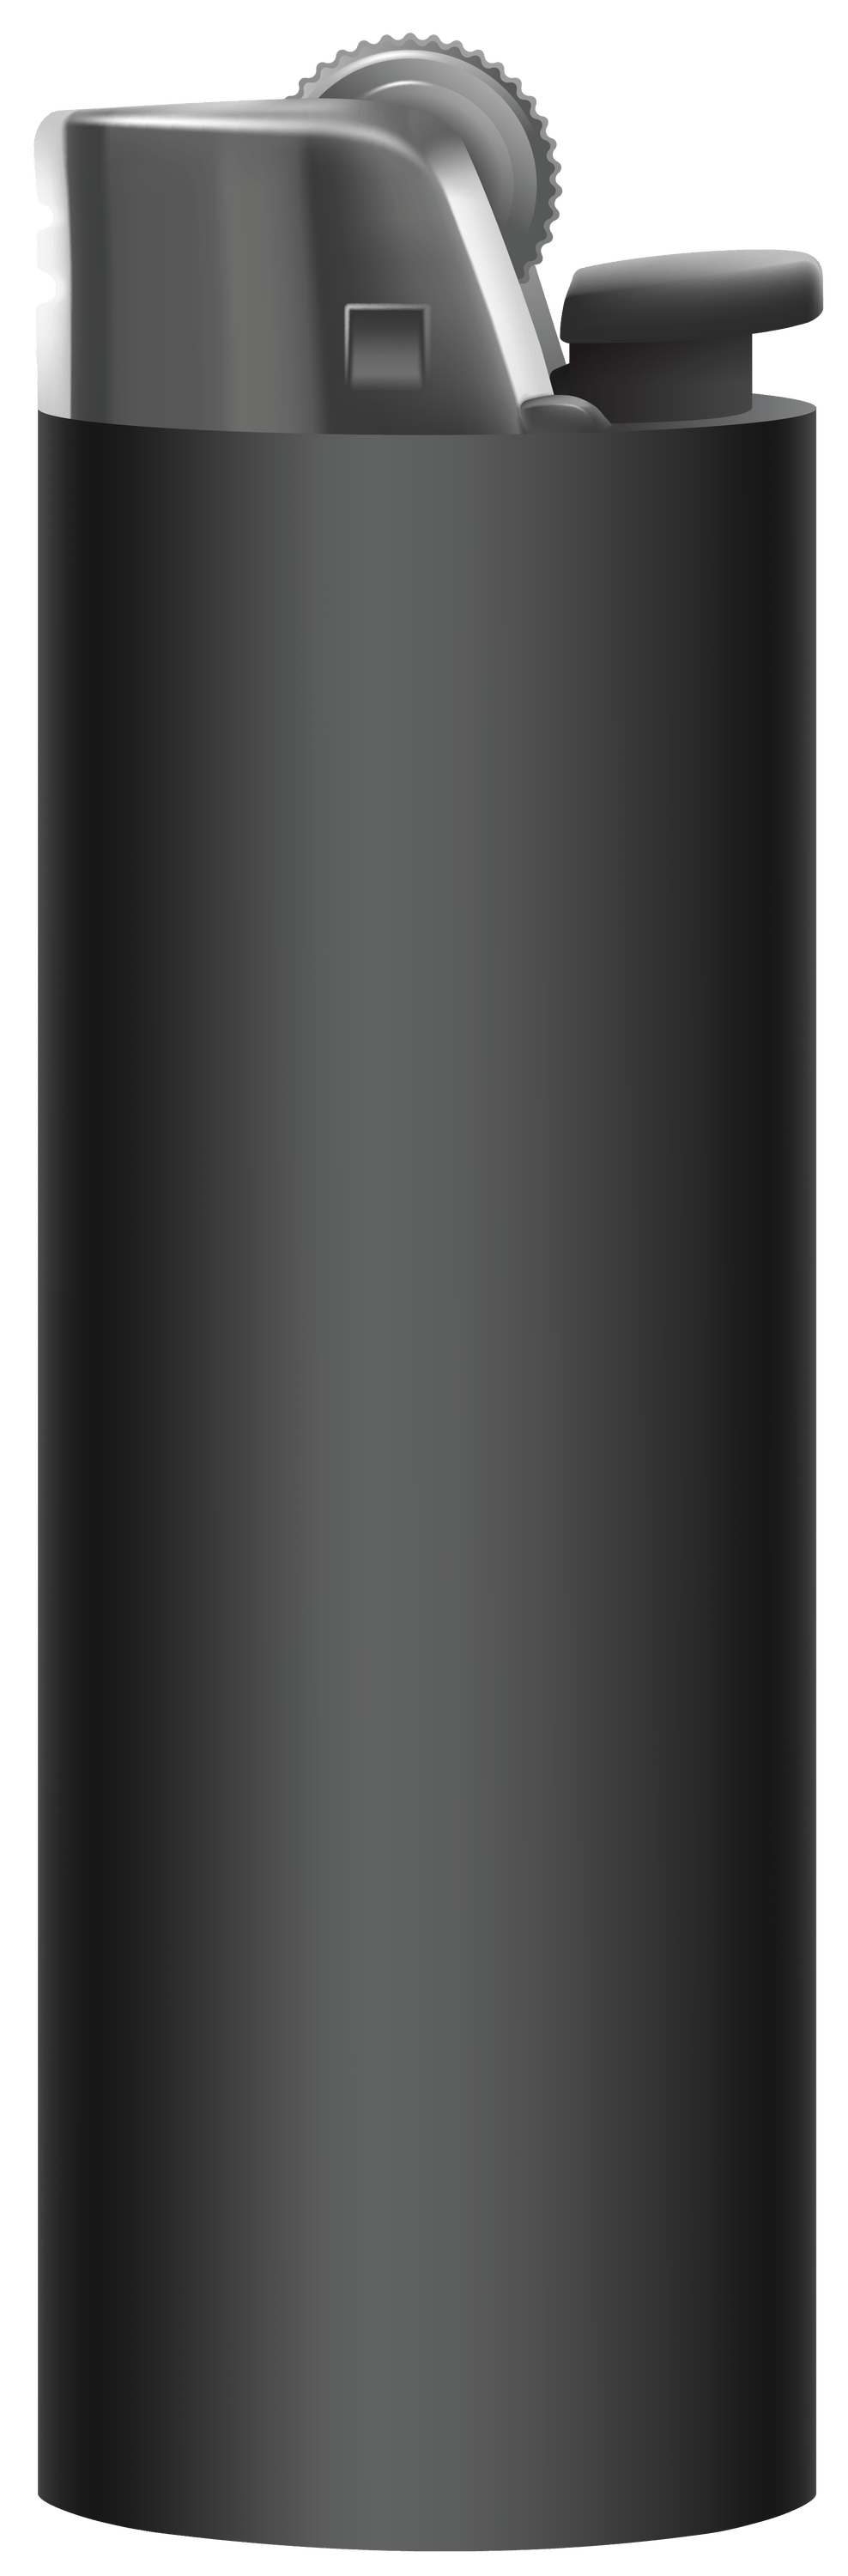 Plastic Lighter Black PNG images